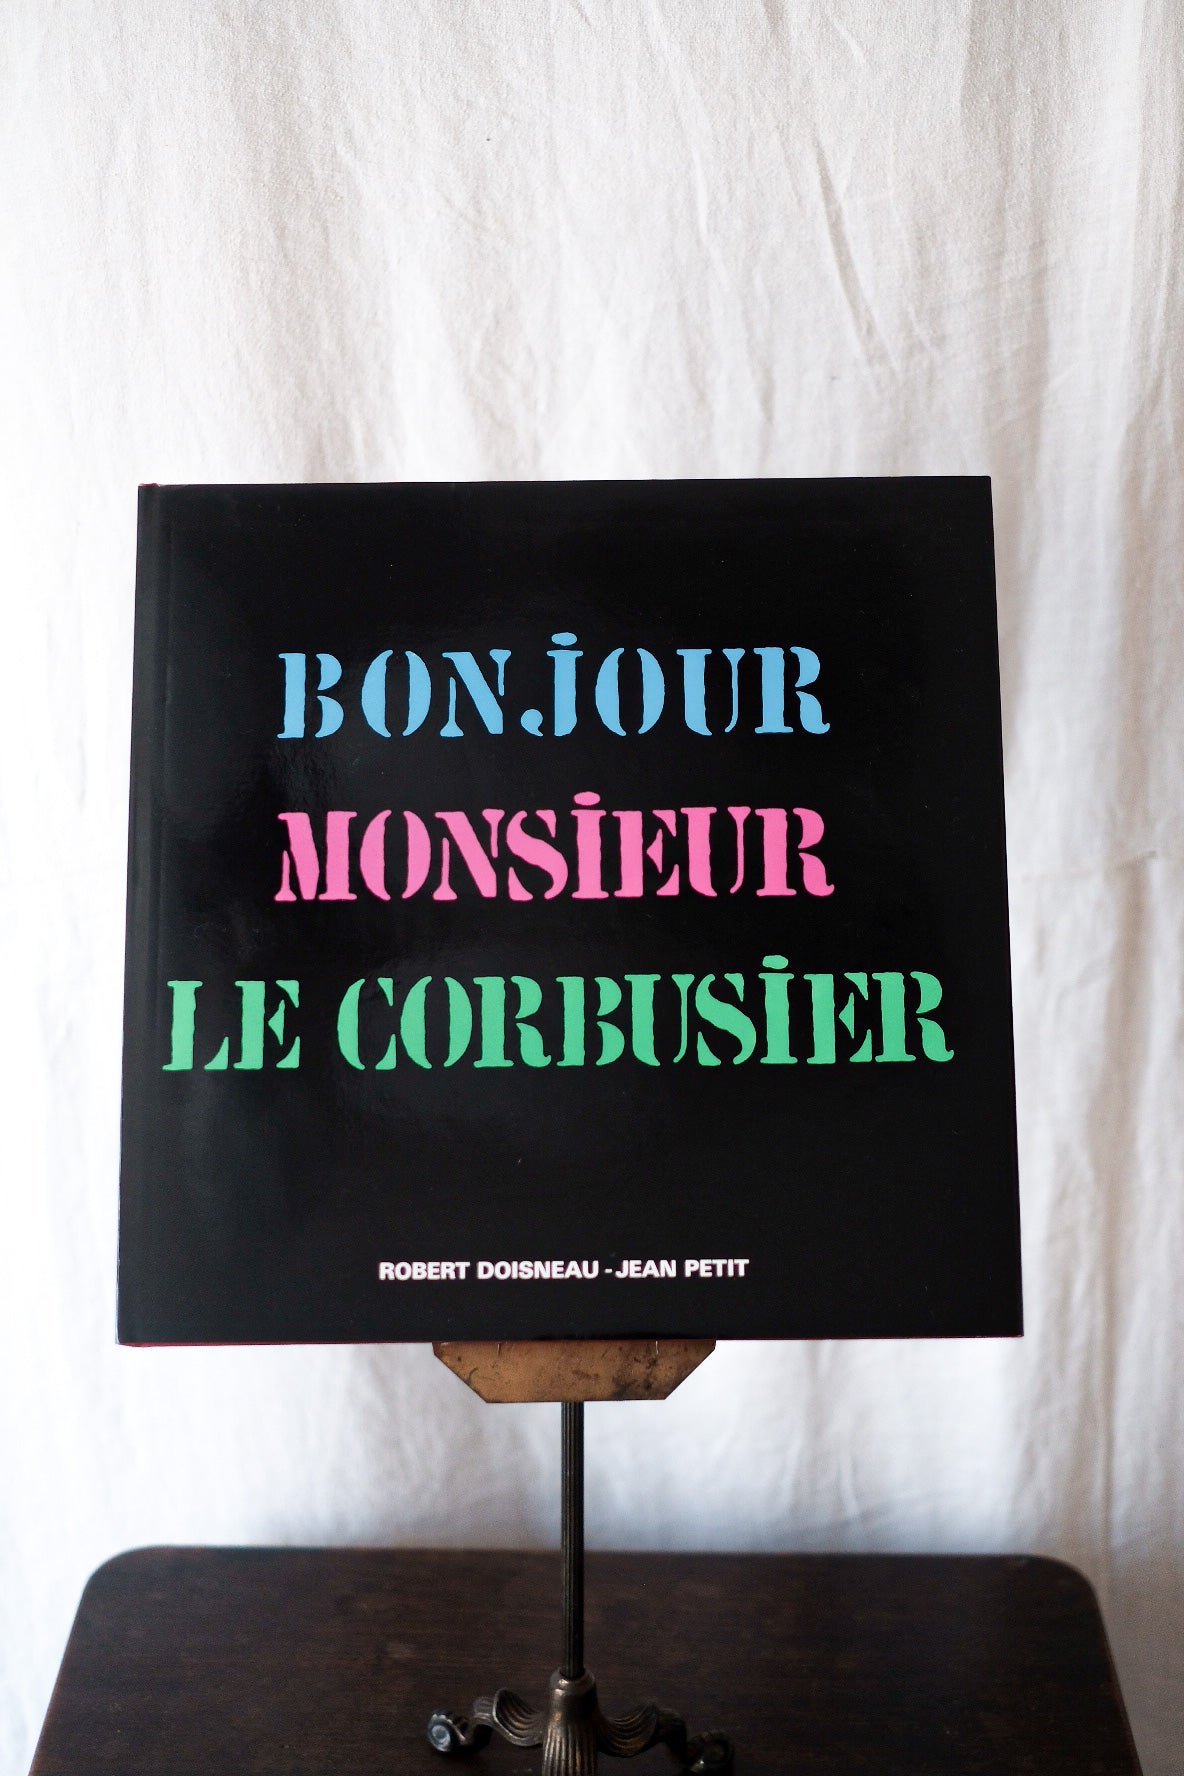 [~ 80's] วินเทจฝรั่งเศส "Bonjour Monsieur Le Corbusier"